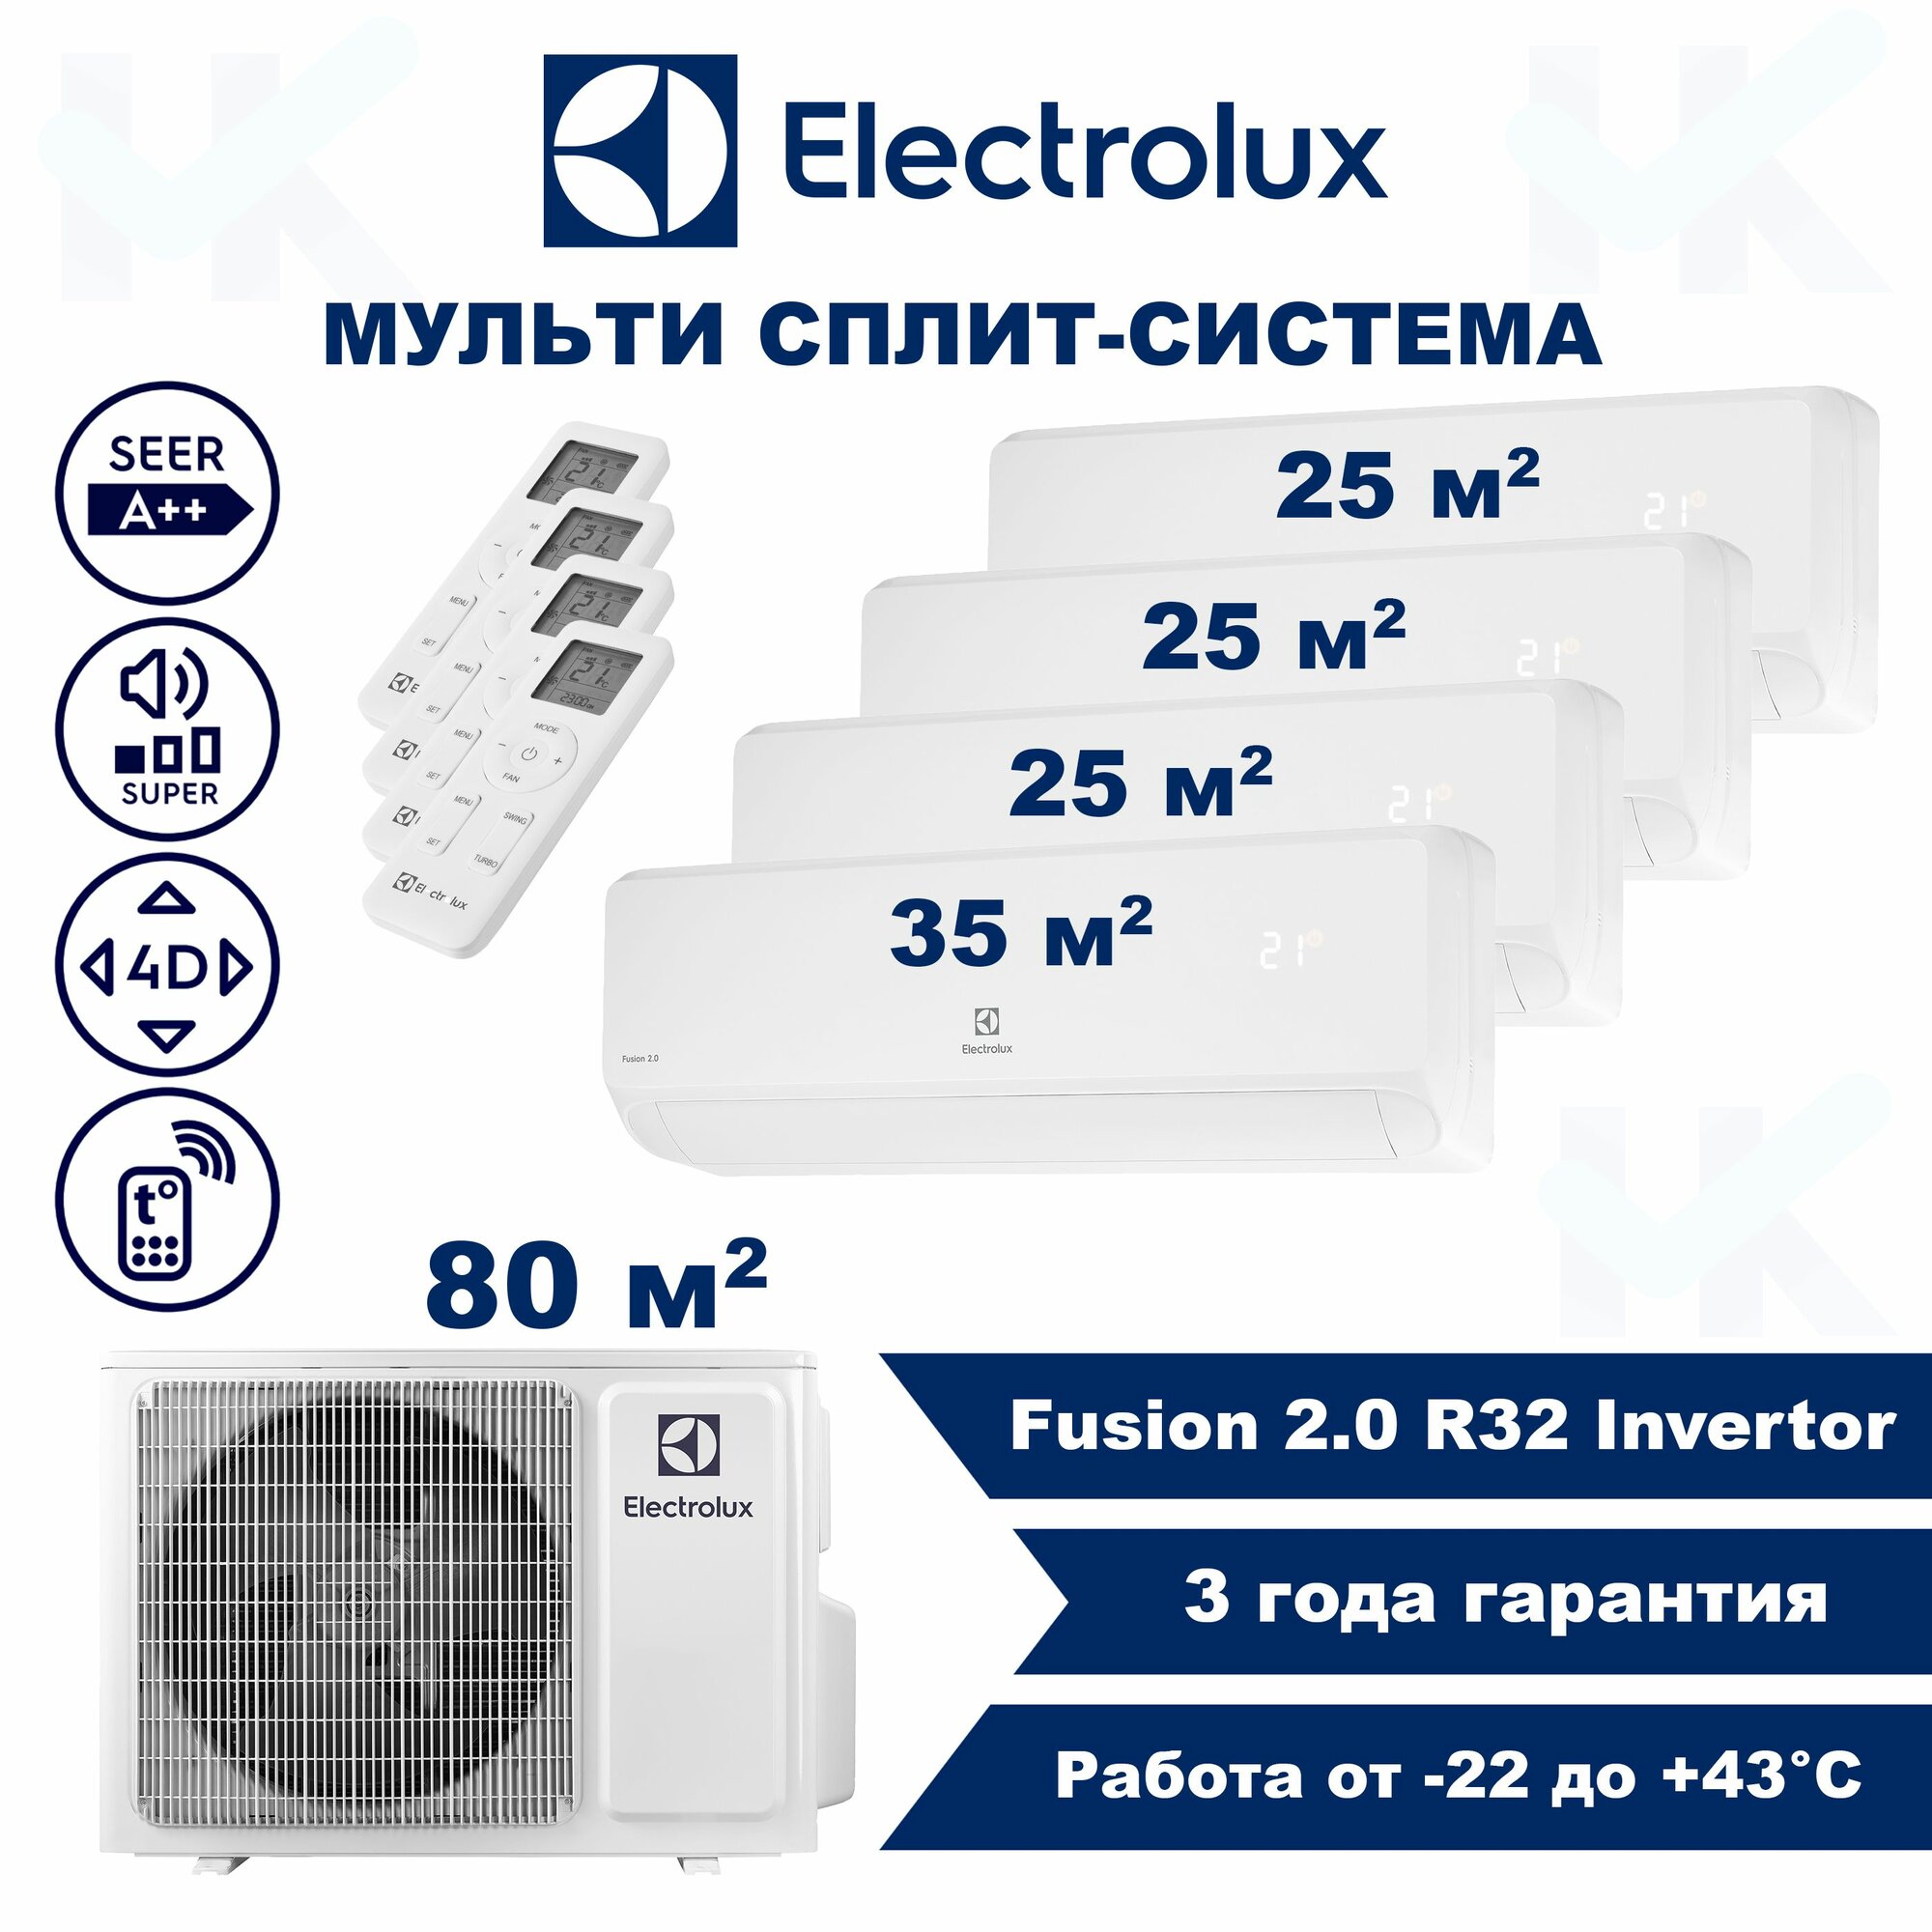 Инверторная мульти сплит-система ELECTROLUX серии Fusion 2.0 на 4 комнаты (25 м2 + 25 м2 + 25 м2 + 35 м2) с наружным блоком 80 м2, Попеременная работа